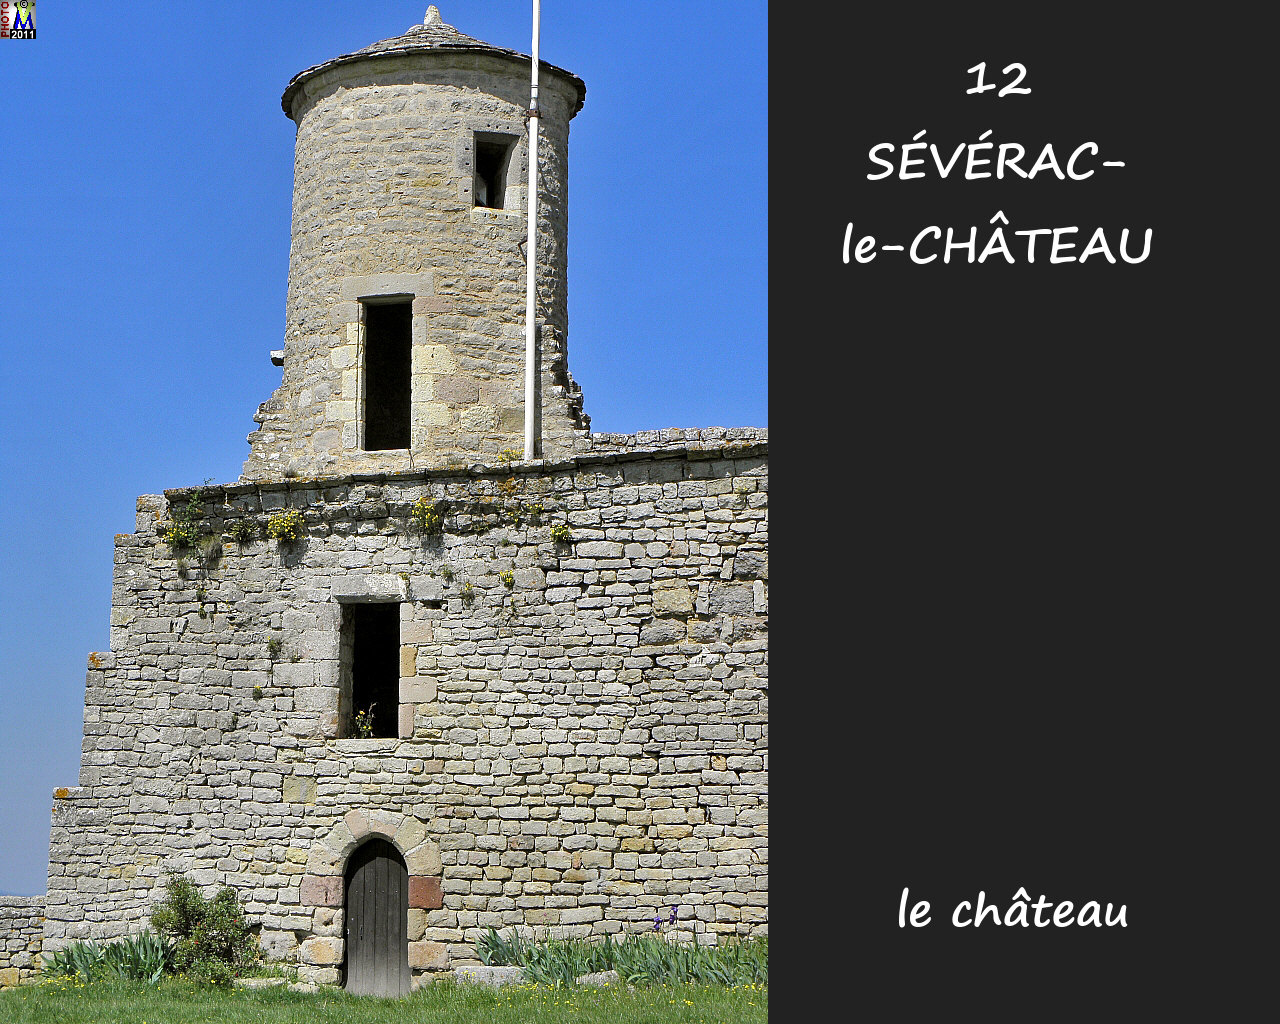 12SEVERAC-CHATEAU_chateau_126.jpg